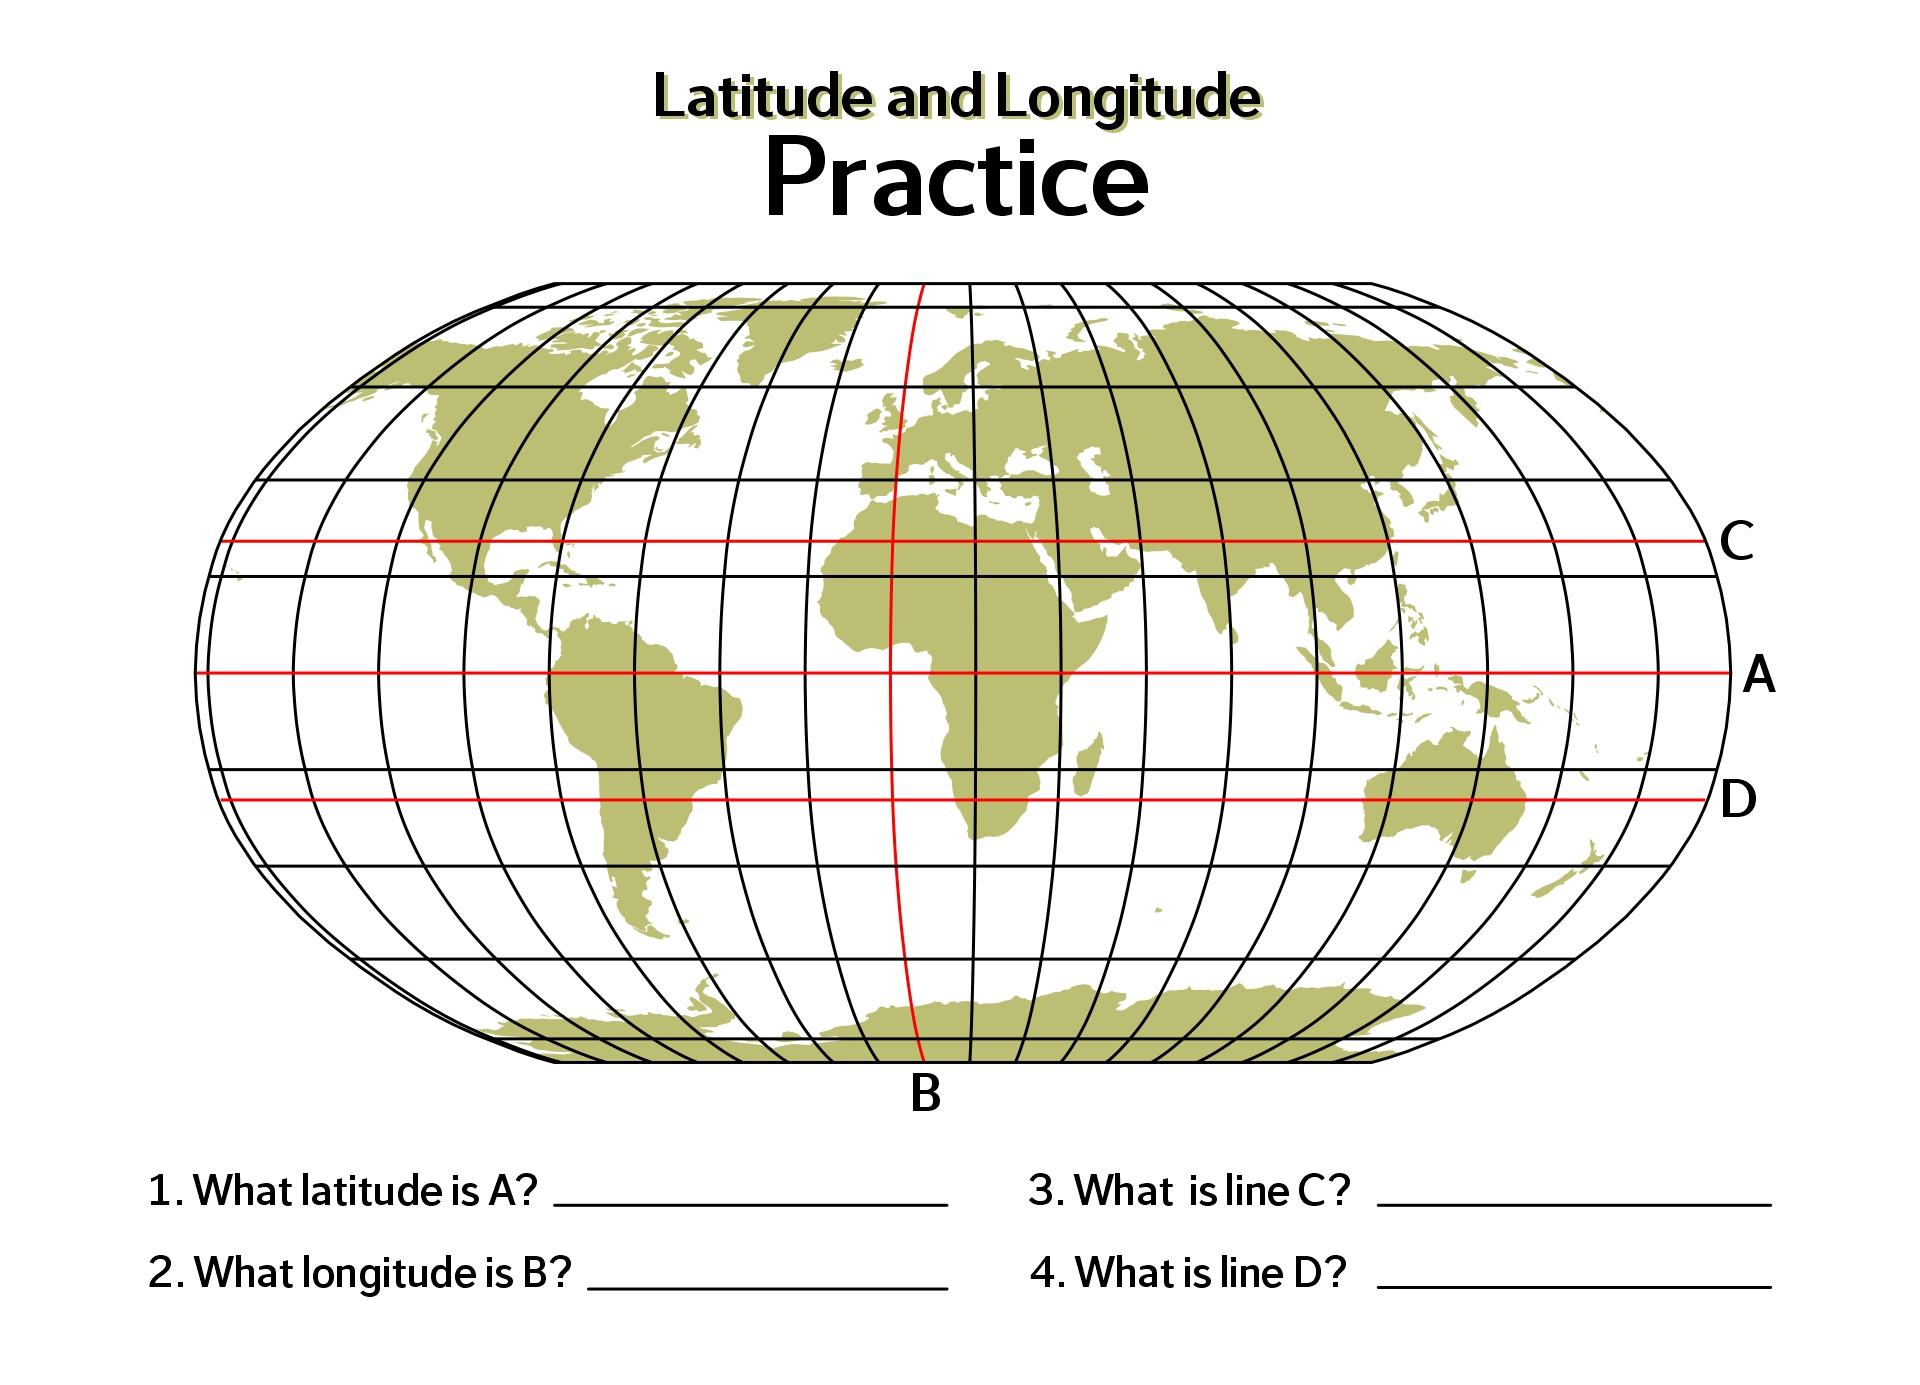 World Map with Latitude Longitude